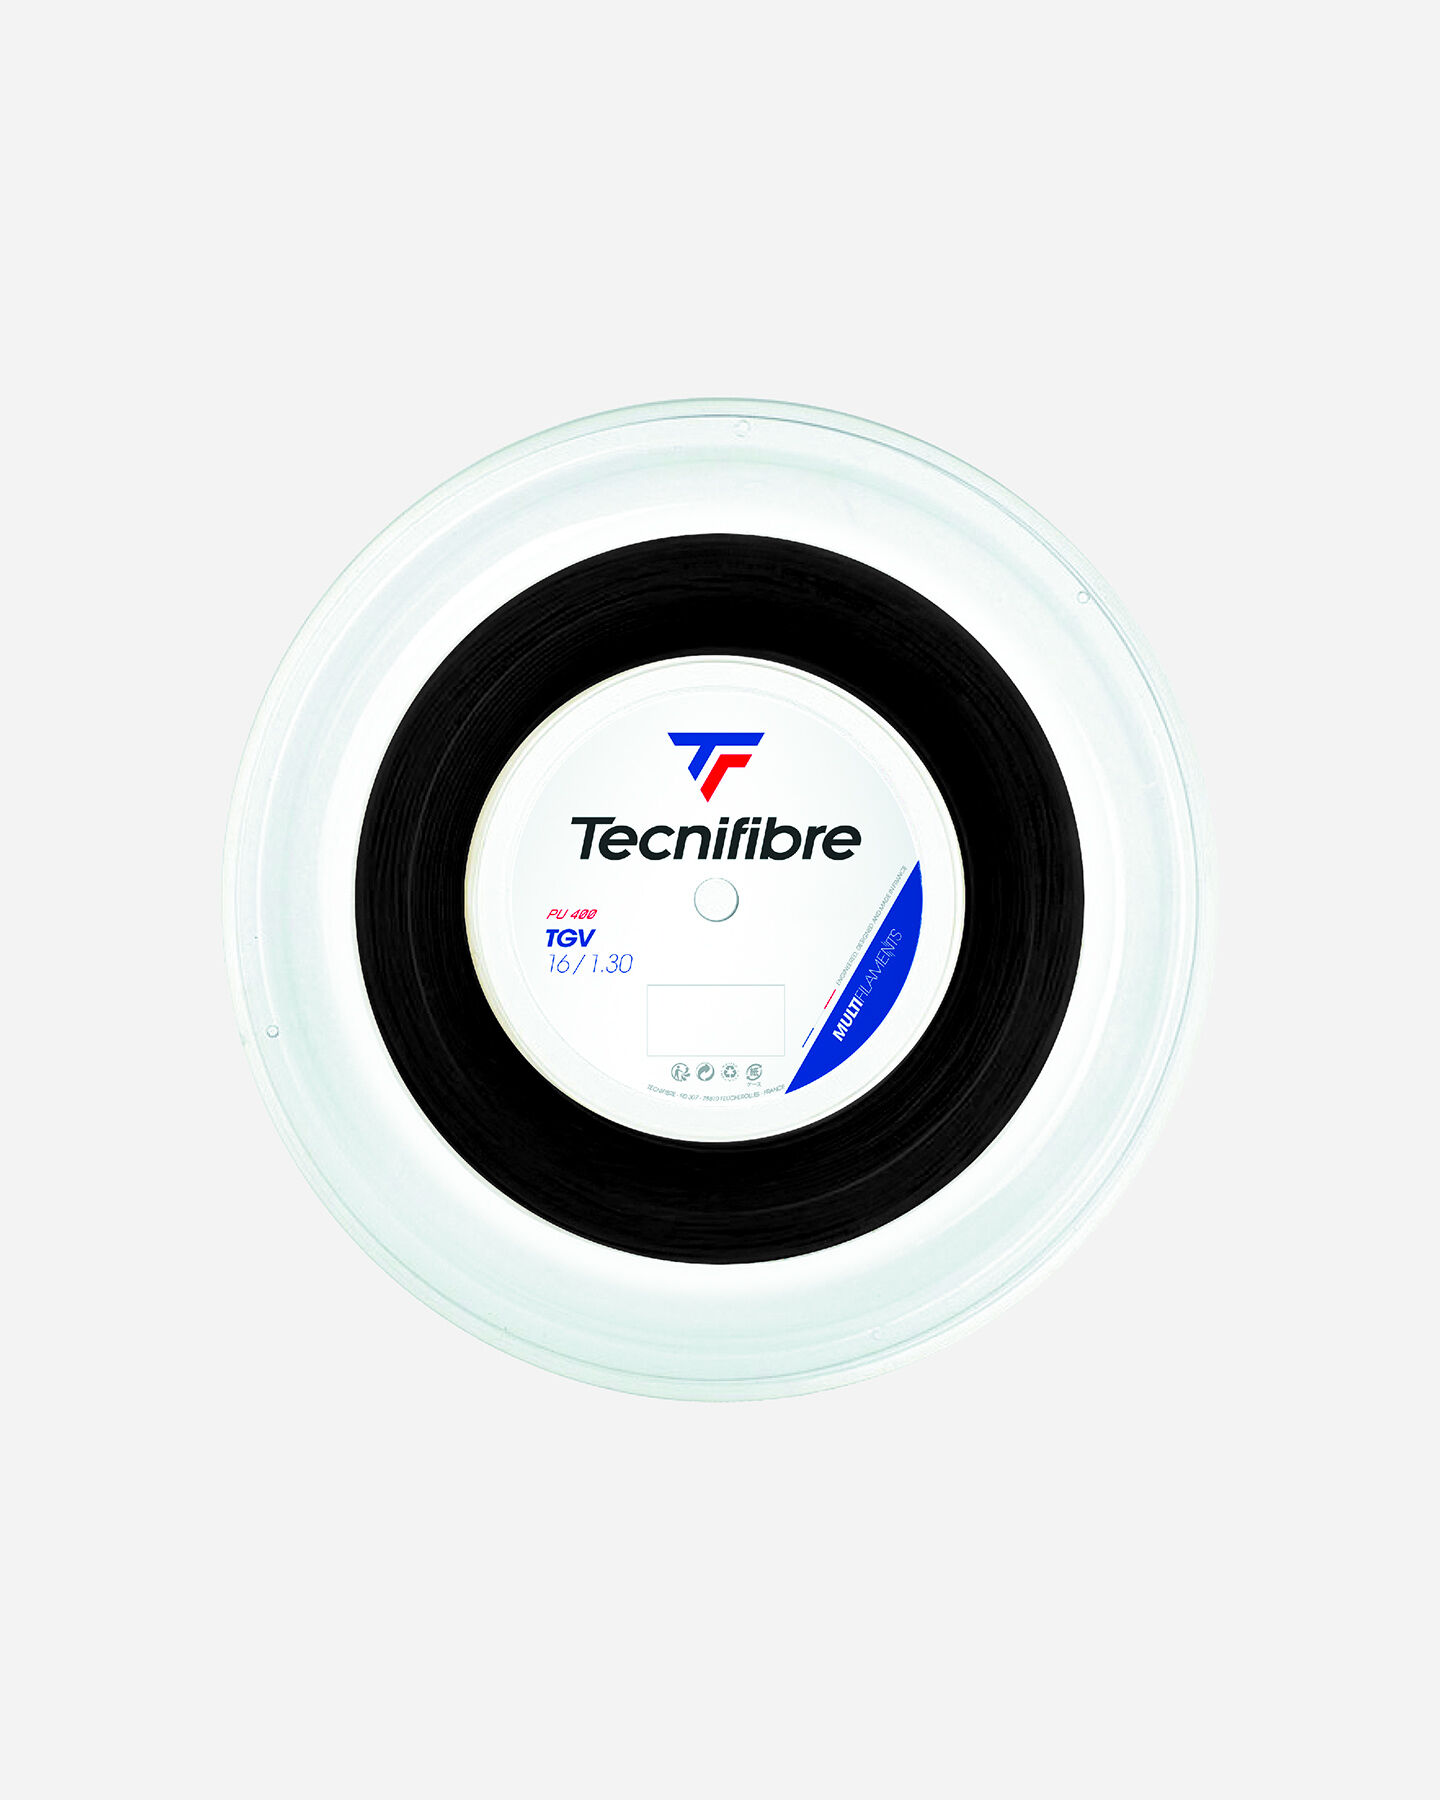  Corde tennis TECNIFIBRE TGV 130  S4043242|1|UNI scatto 0